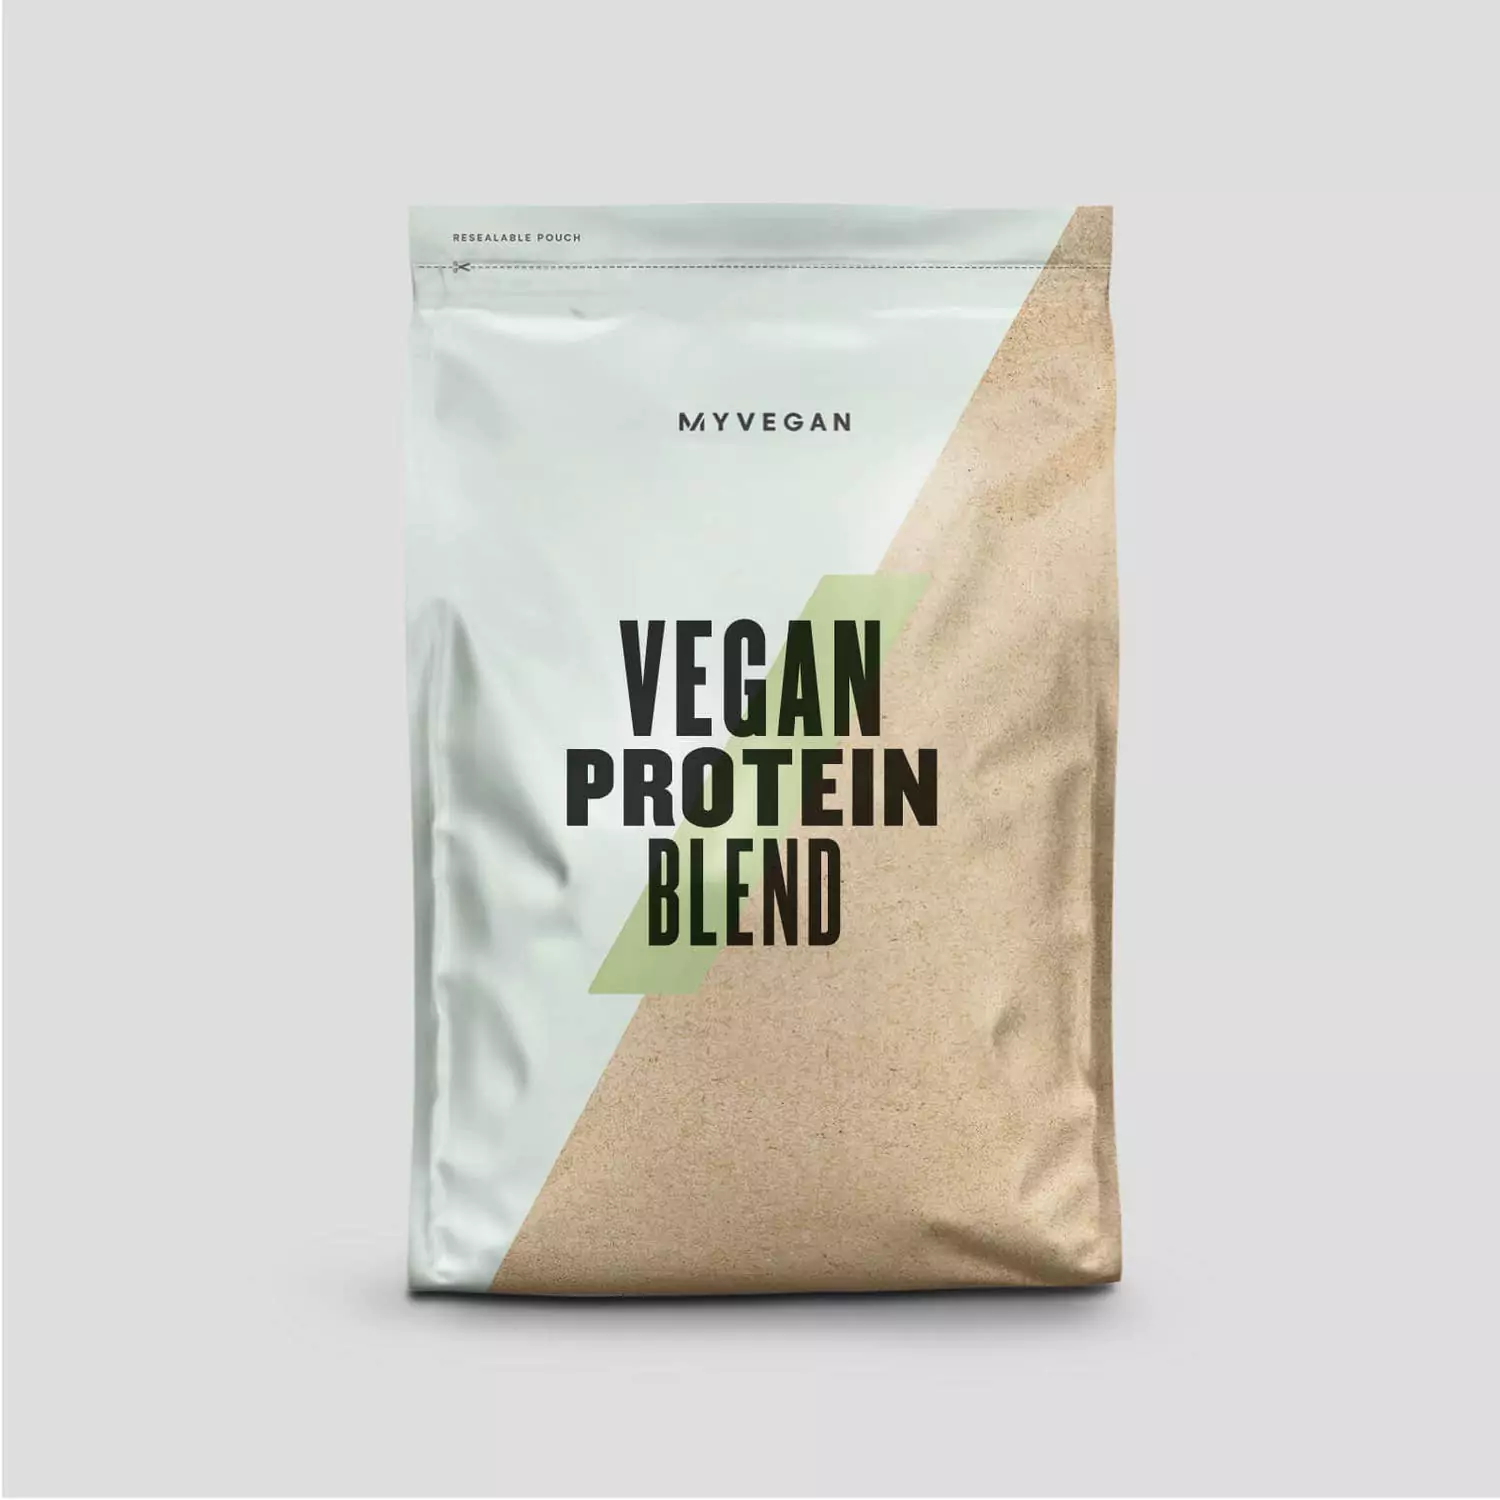 Myprotein Vegan Protein Blend 250g Discounts and Cashback